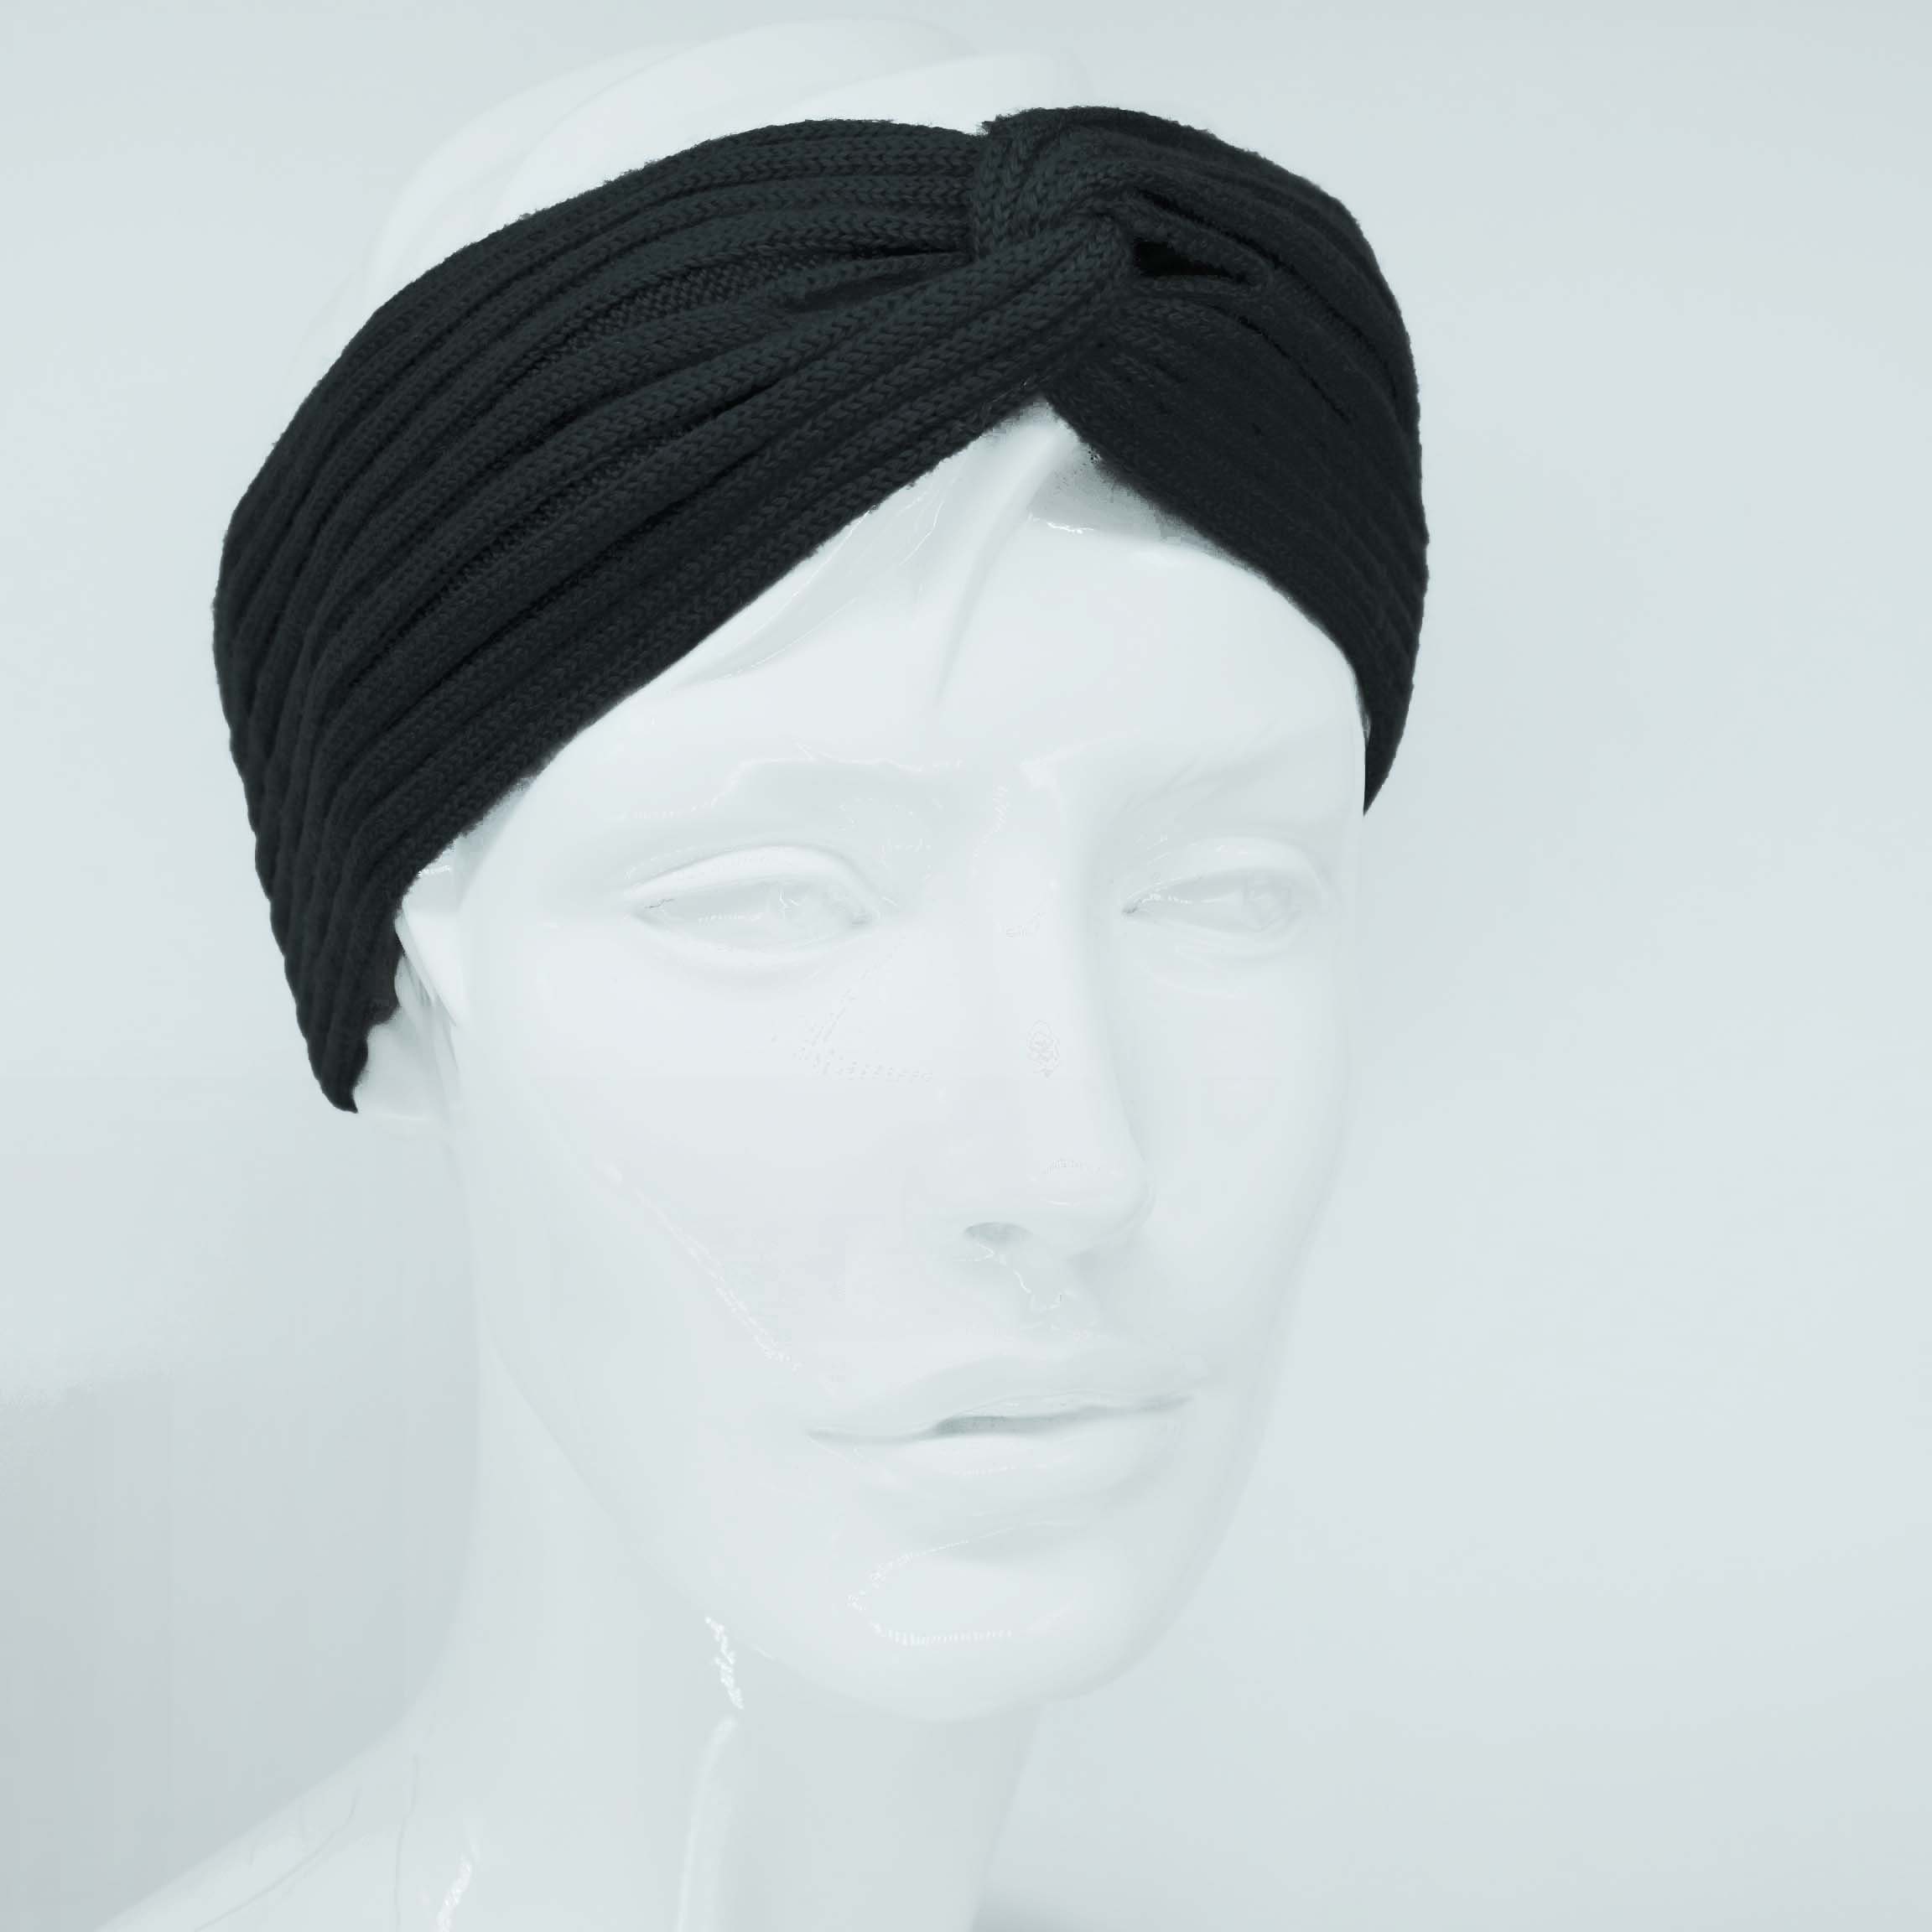 Stirnband Ohrenwärmer BEAZZ Damen WOLLE 100% warm Winter Feinstrick, weich schwarz Stirnband und Merino